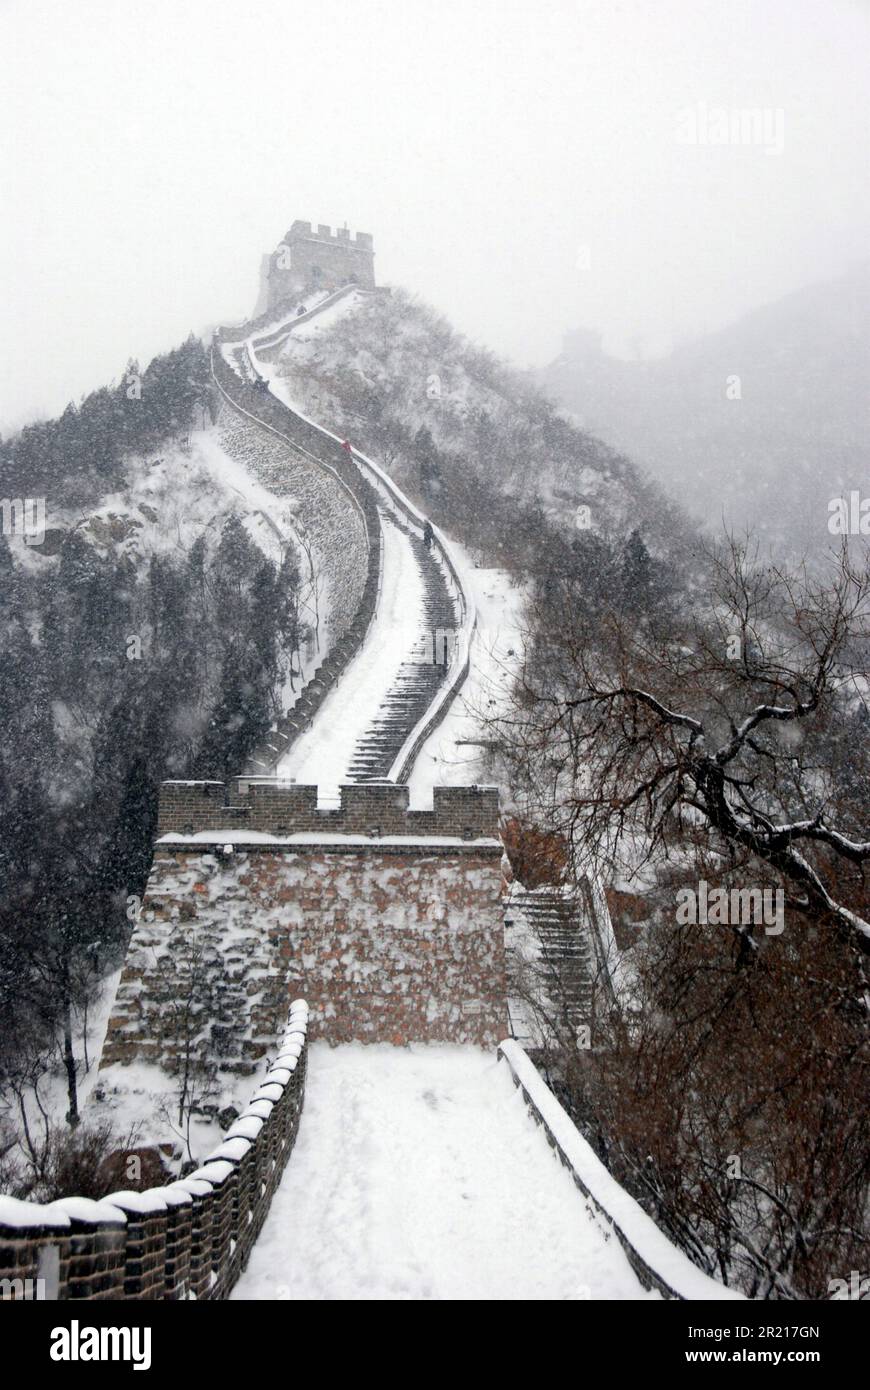 Pechino, Cina - la neve alta colpisce Pechino e le aree circostanti causando un'interruzione diffusa dei viaggi ferroviari, stradali e aerei. Le temperature sono scese fino a -17 gradi Celsius. Pittoresca scena della Grande Muraglia Cinese a Juyongguan, a circa 50 km a nord-ovest di Pechino Foto Stock